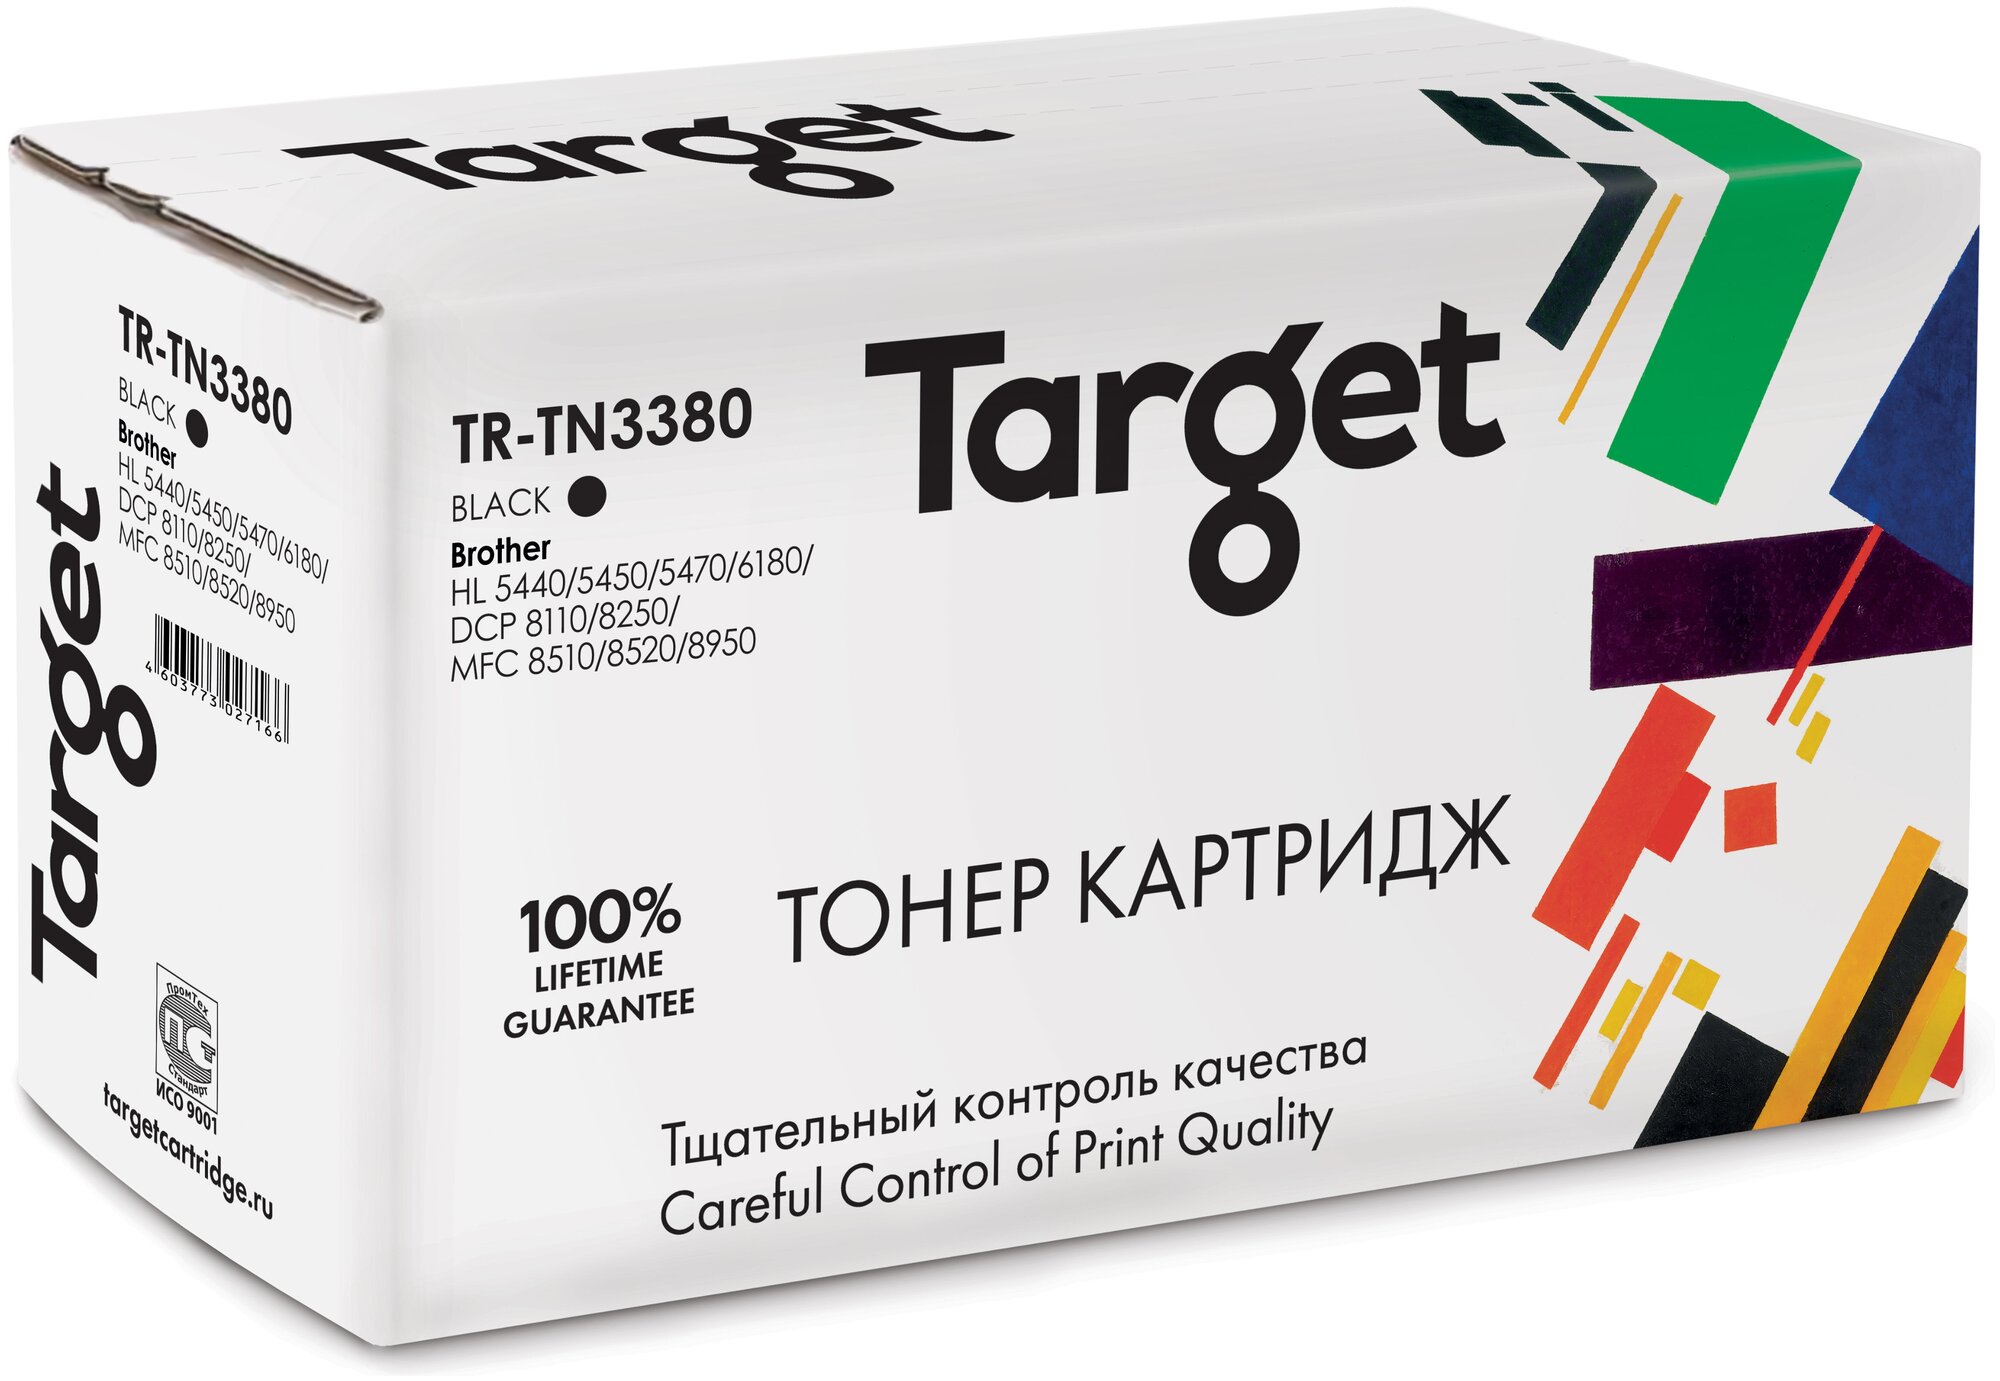 Тонер-картридж Target TN3380, черный, для лазерного принтера, совместимый